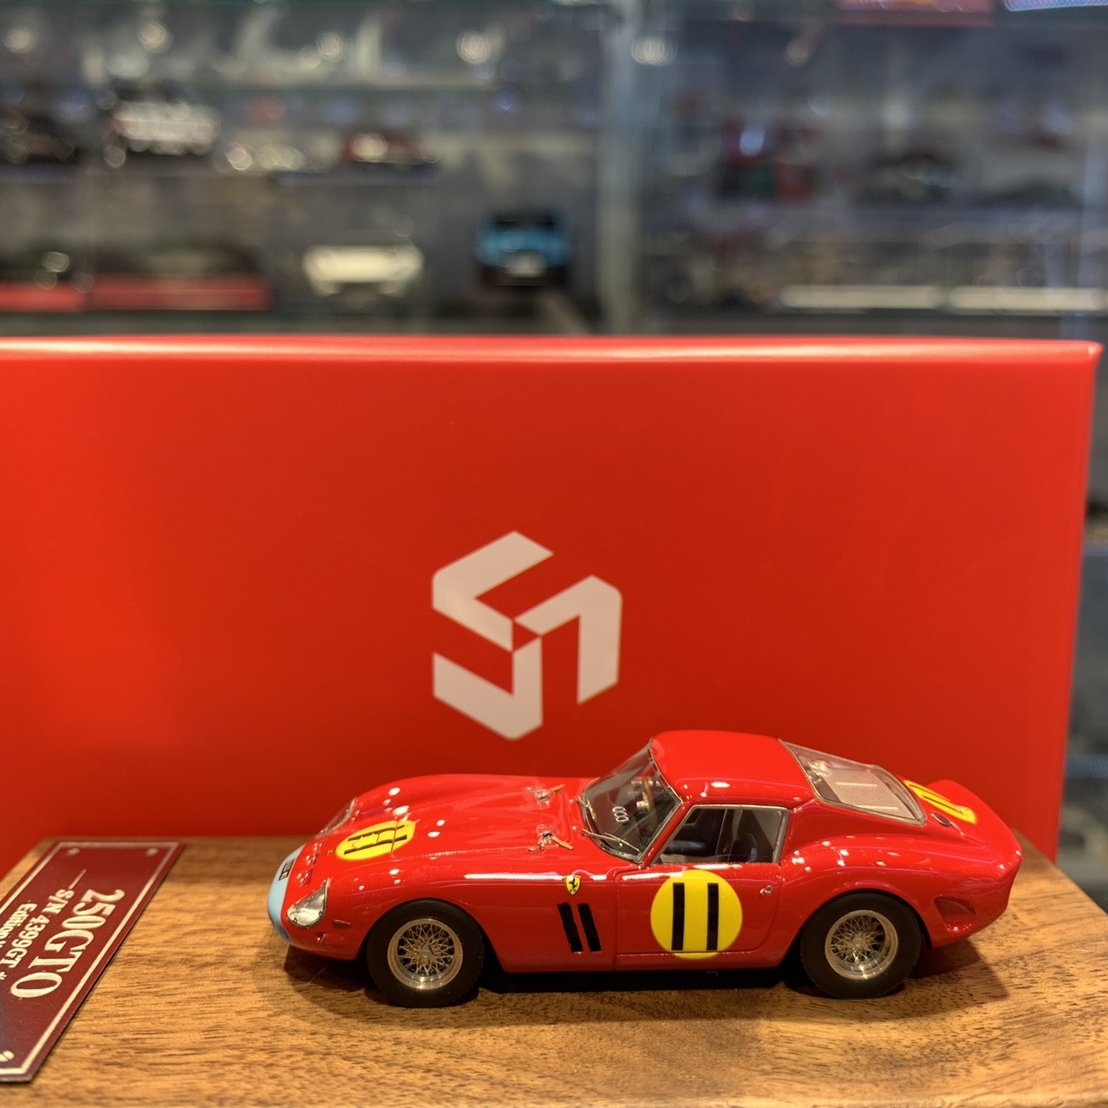 吉華科技@ 1/64 SCM Ferrari 250 GTO S/N 4399 GT #11 (樹酯車 